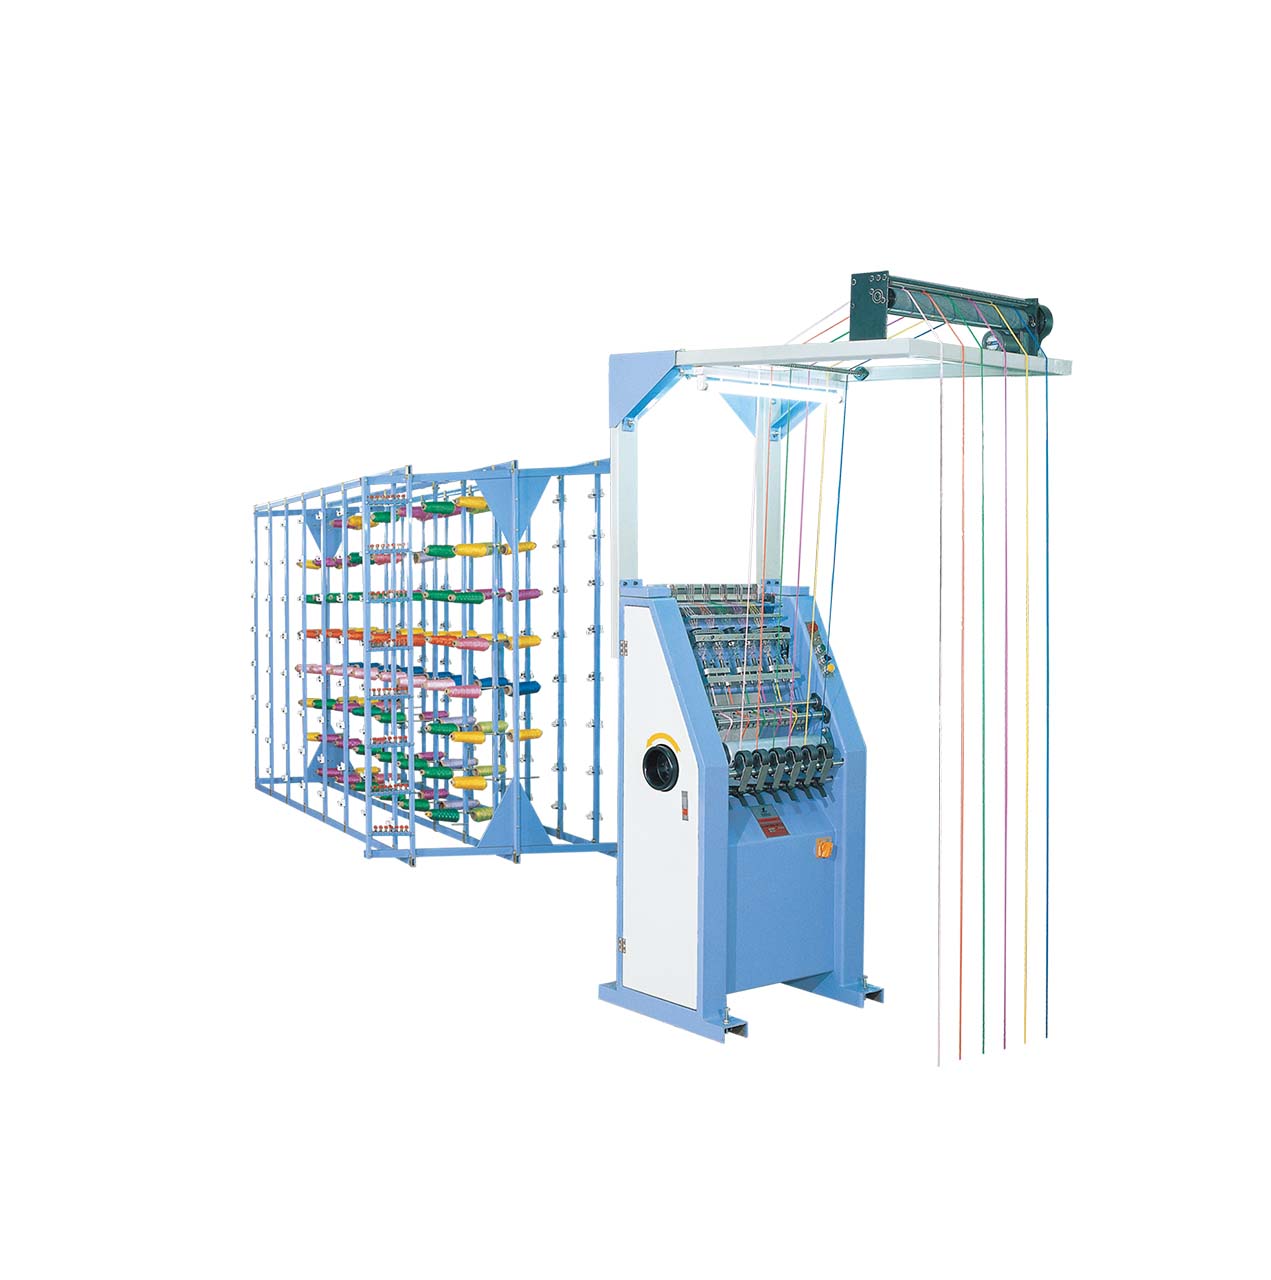 Wholesale Price China Cotton Rope Making Machine - YTZ 8/6 High speed cord knitting machine – Yitai